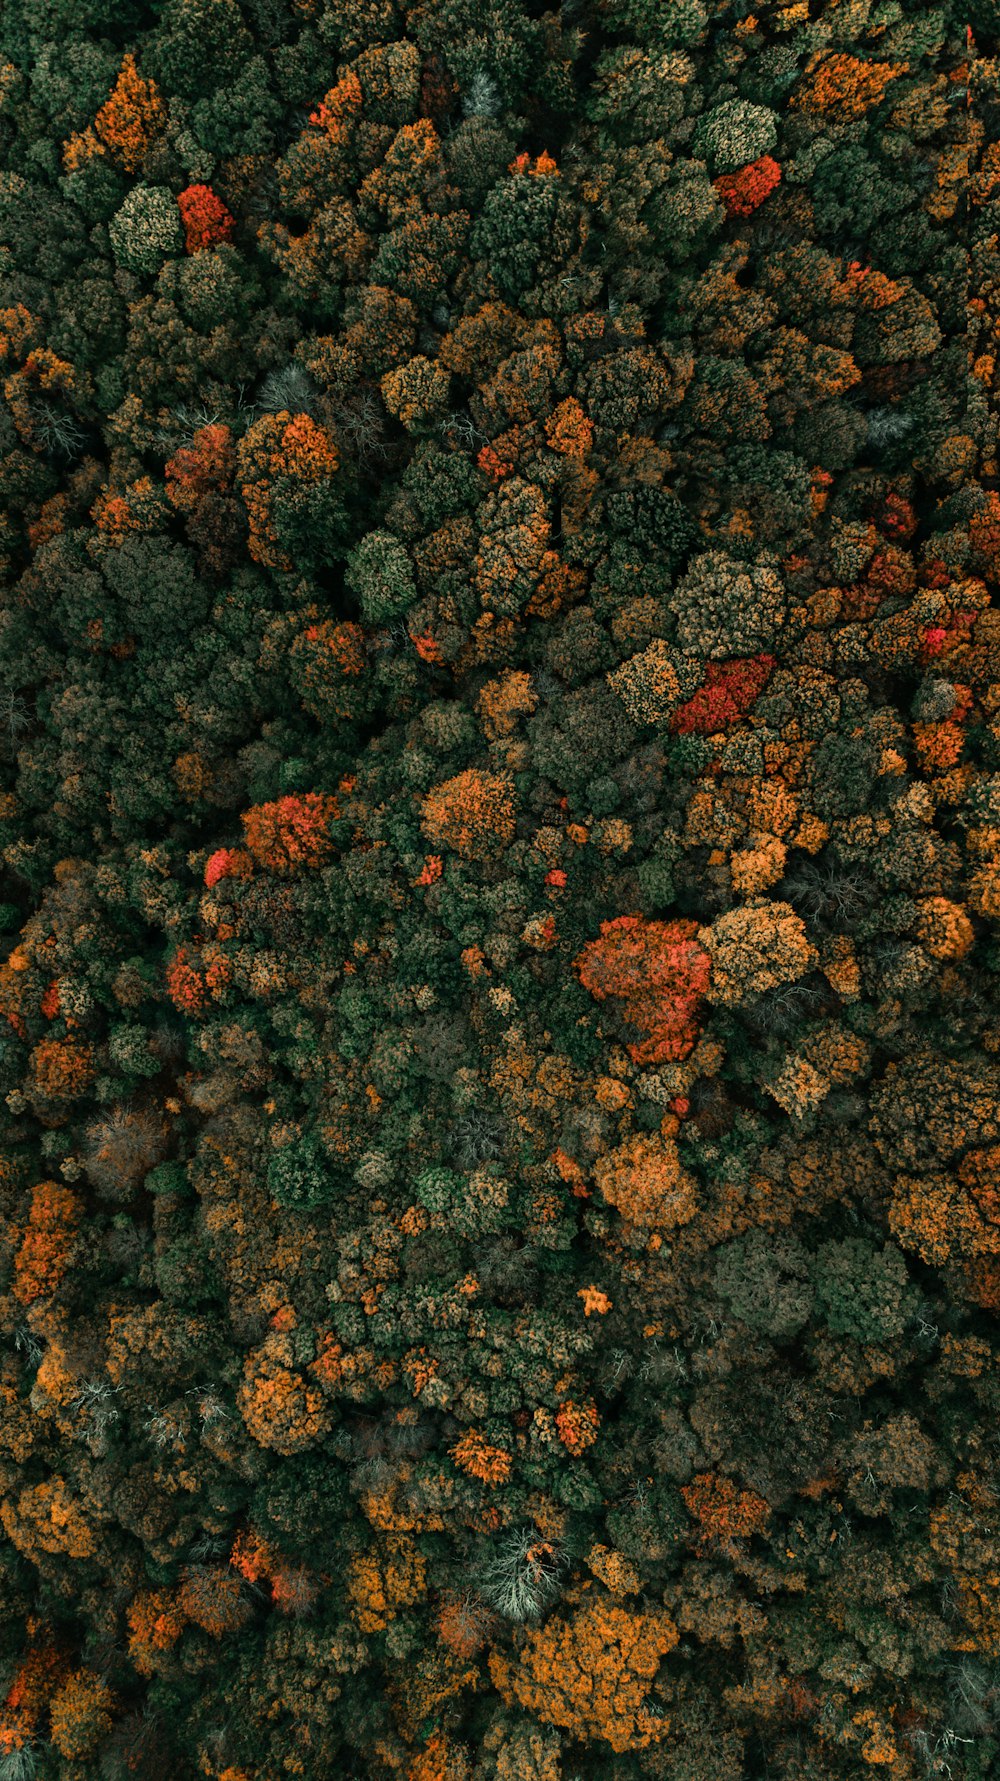 Fotografía aérea de árboles de hojas verdes